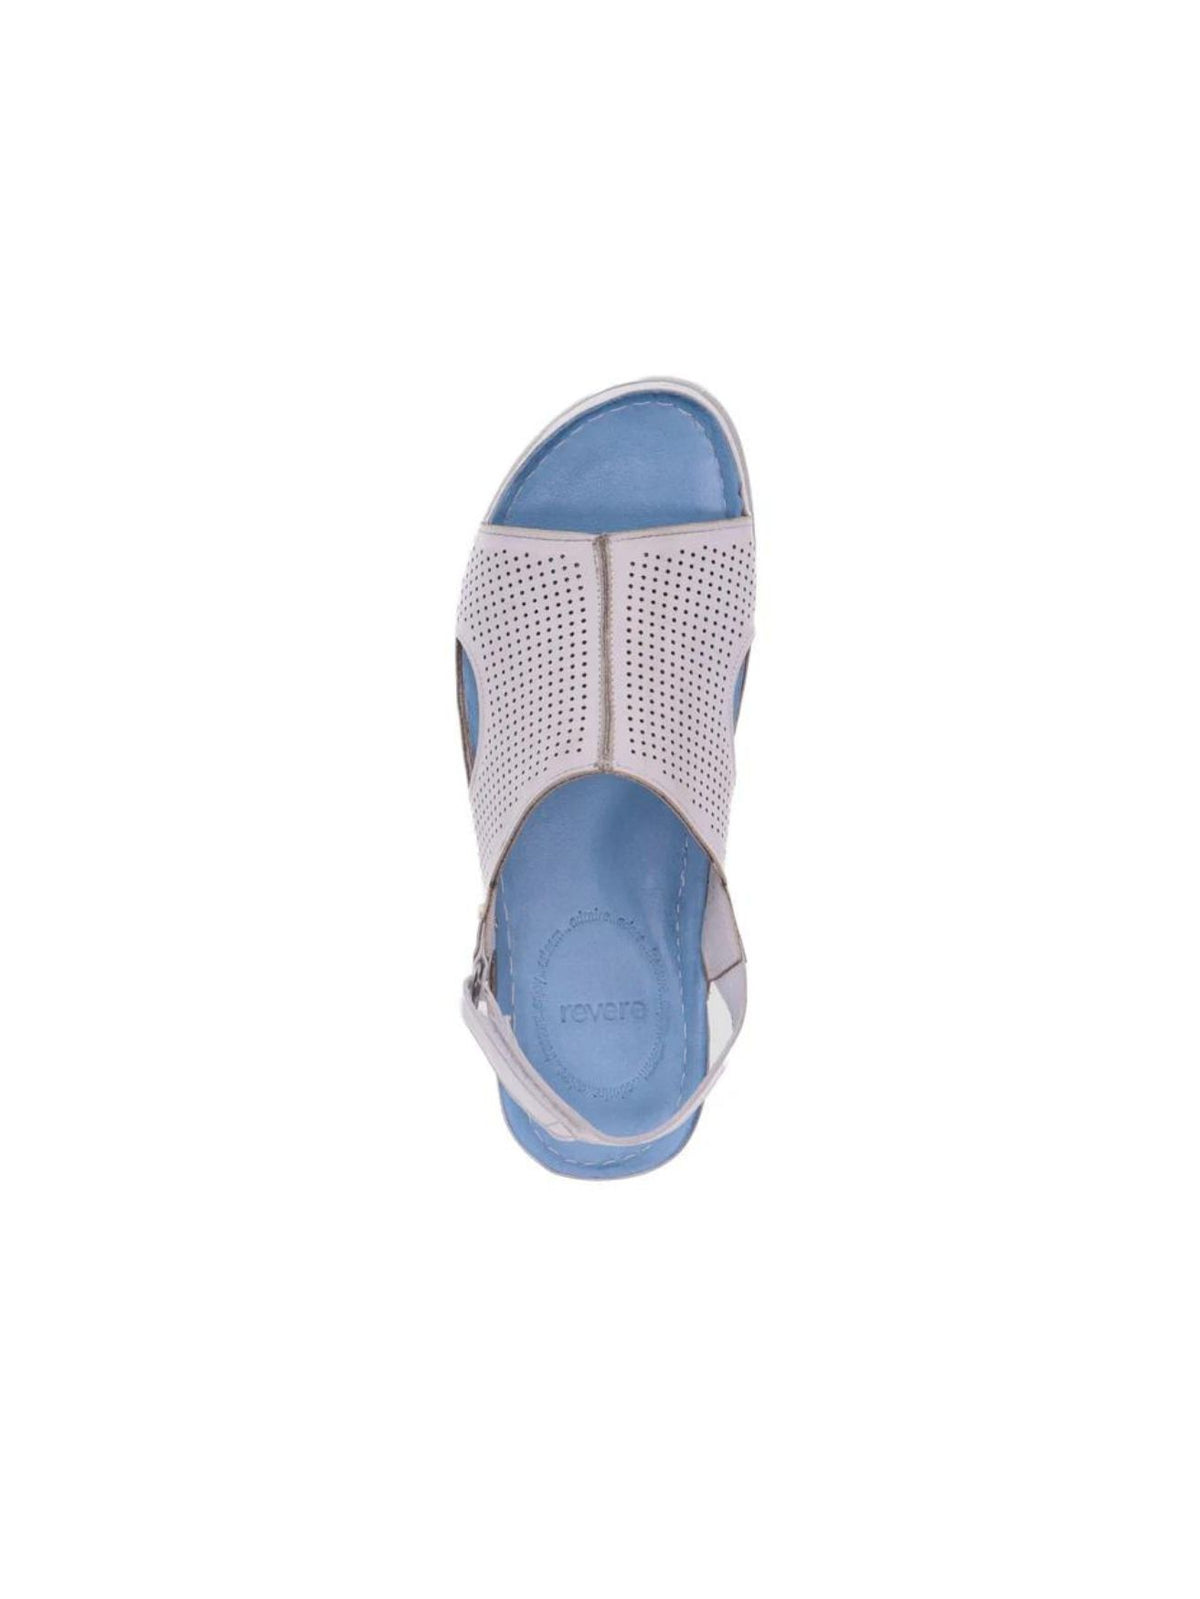 revere trivoli back strap sandals in white-top view